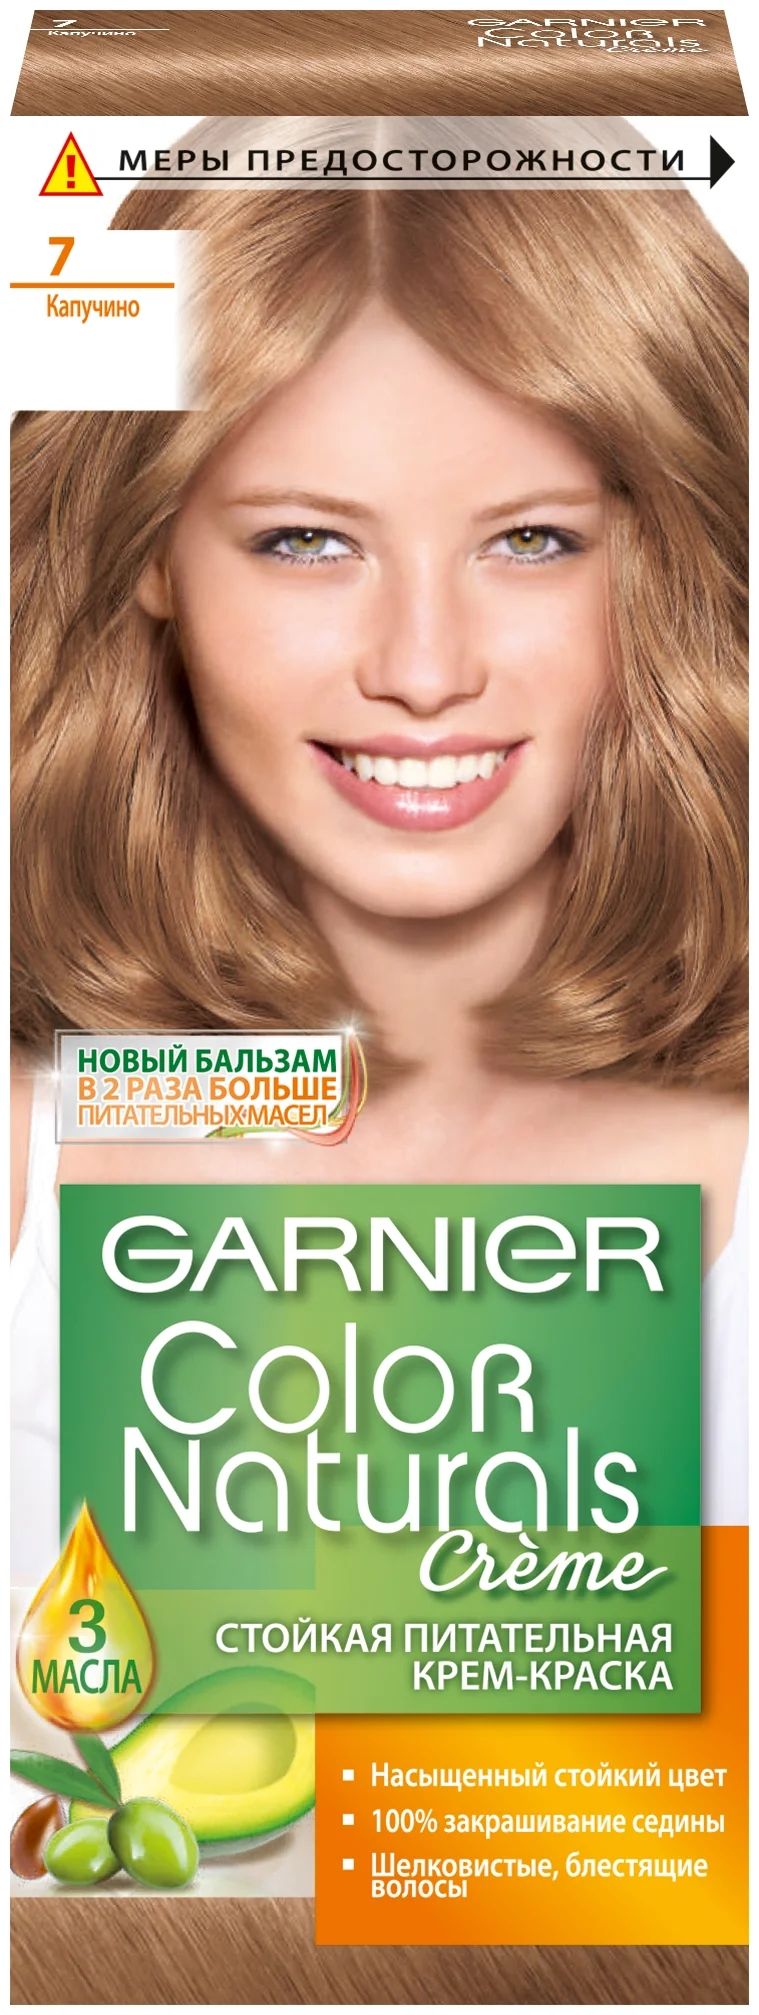 Garnier color краска для волос отзывы. Гарнер капучино 7 краска. Гарньер краска для волос капучино. Garnier Color naturals 7 капучино. Гарнер краска для волос капучино.